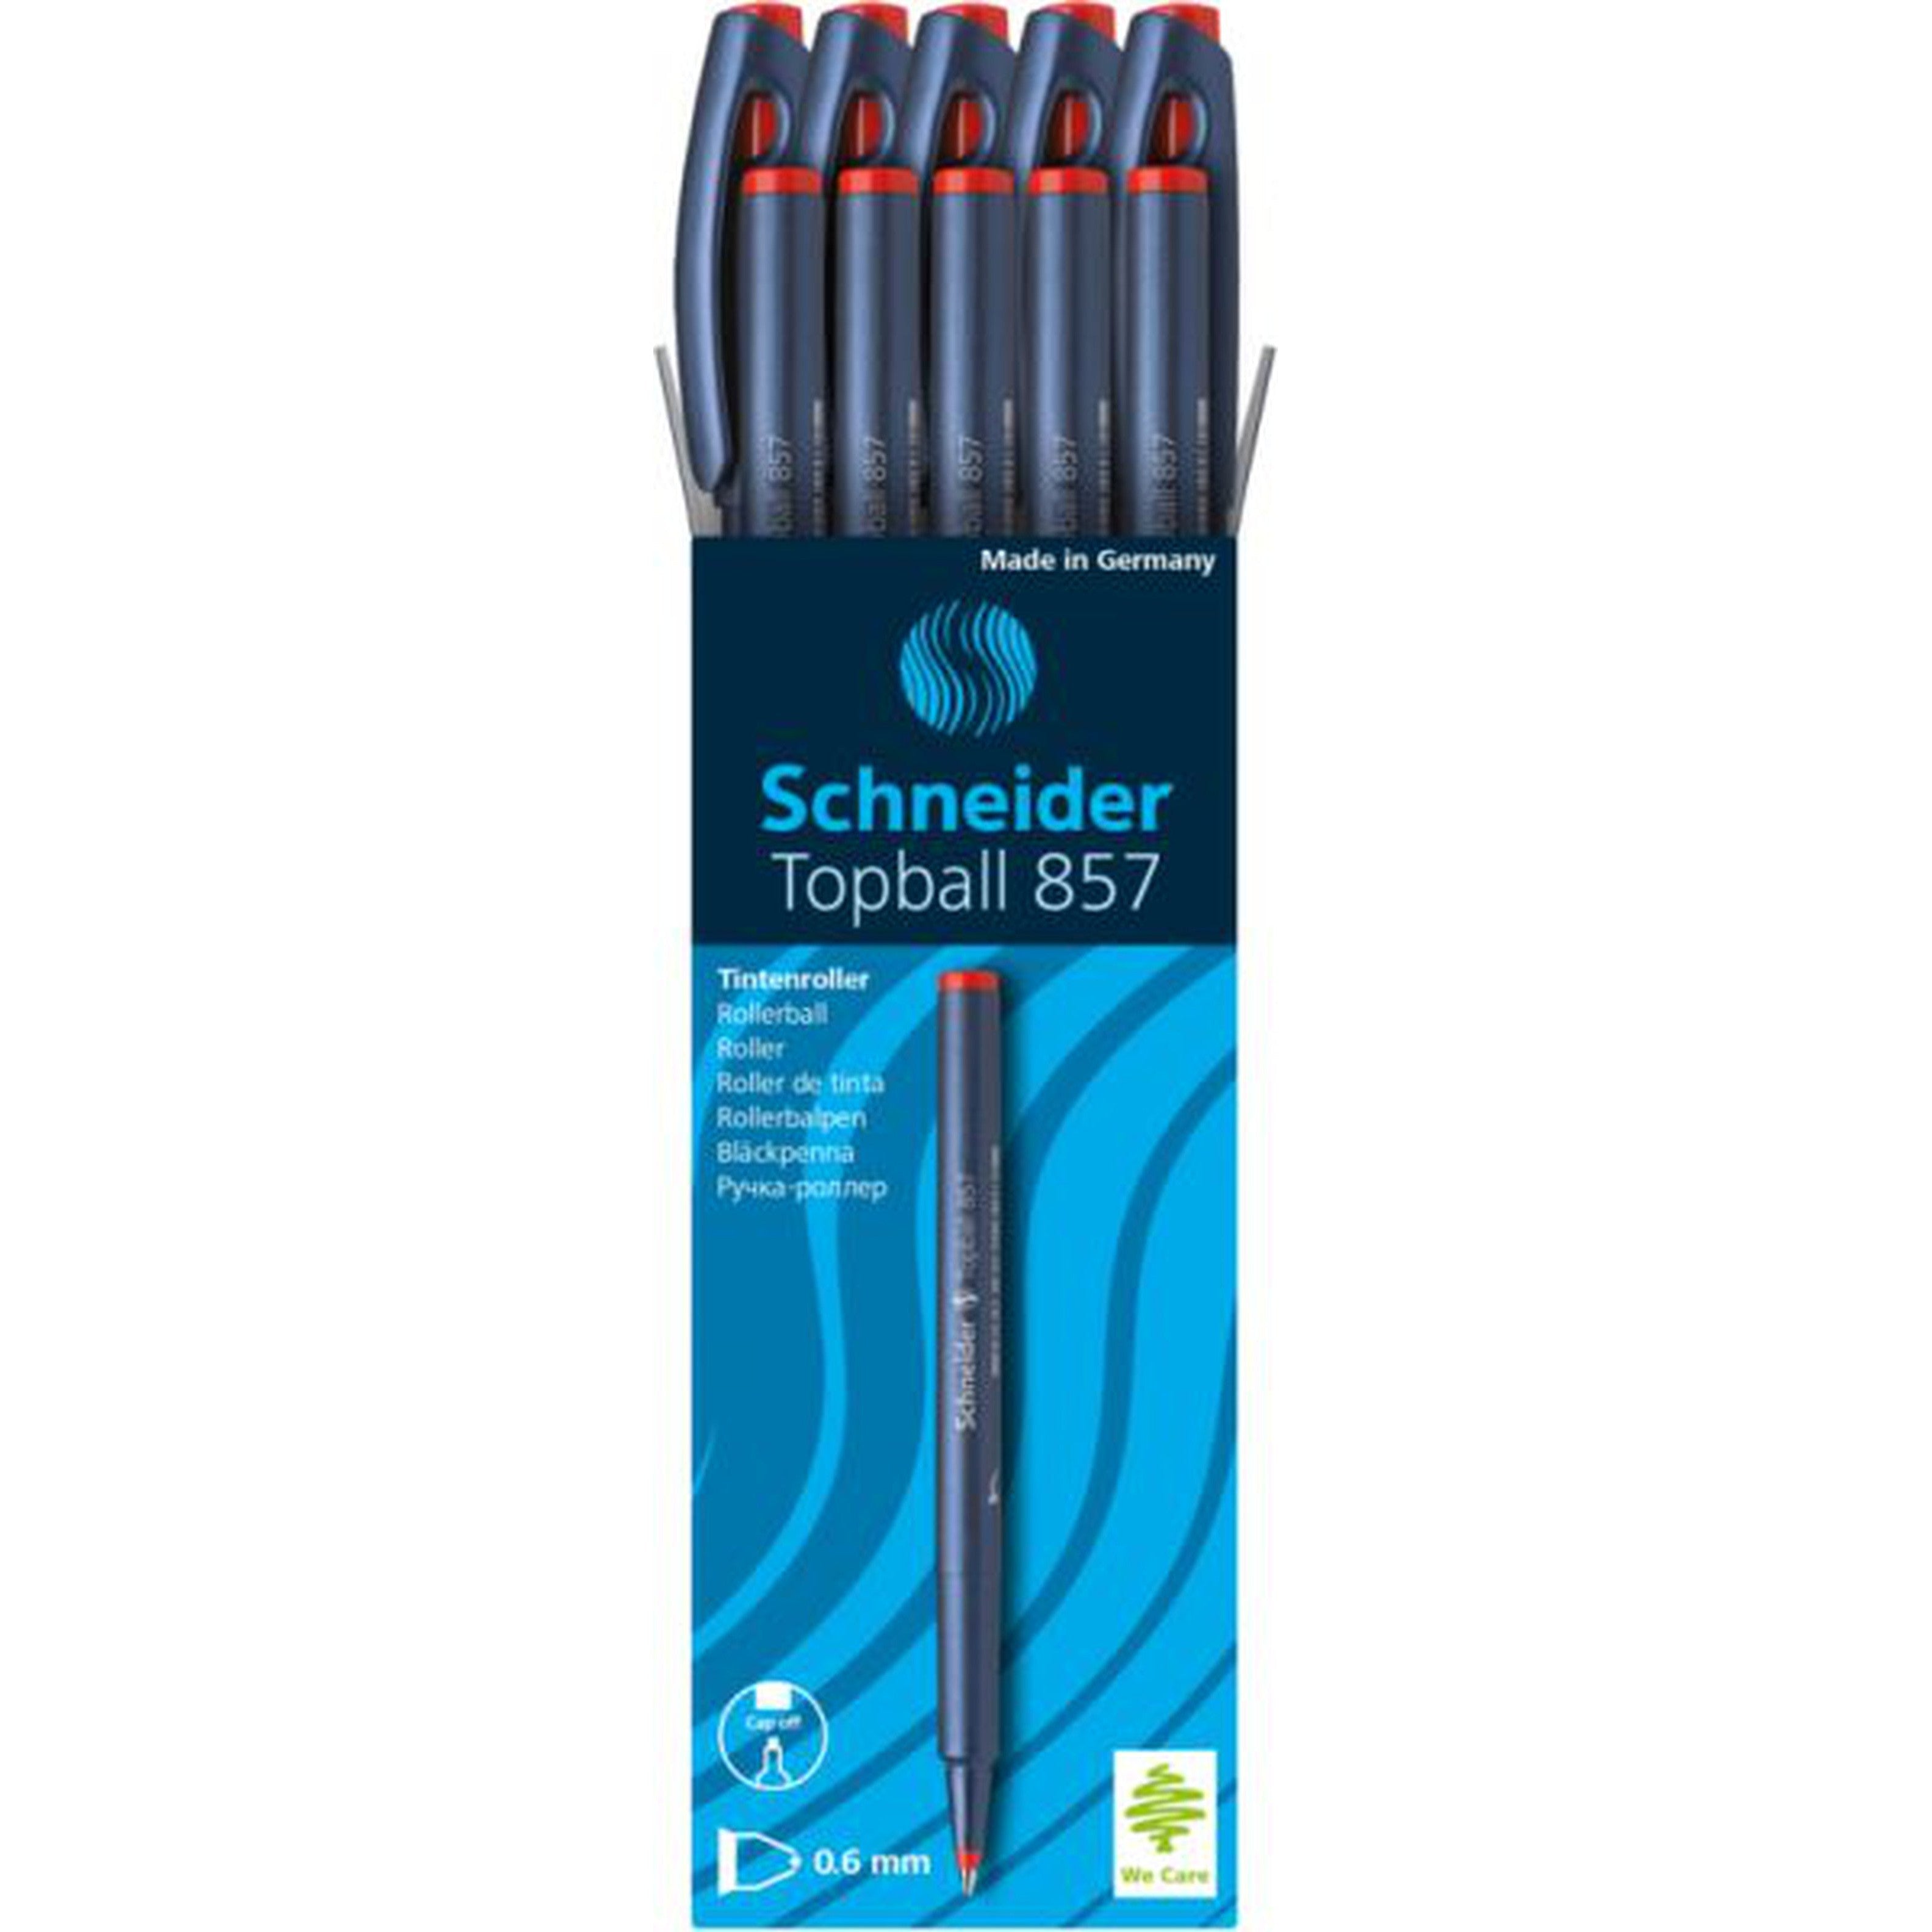 Schneider Top Ball Pen 857-Pens-Schneider-Red-Star Light Kuwait